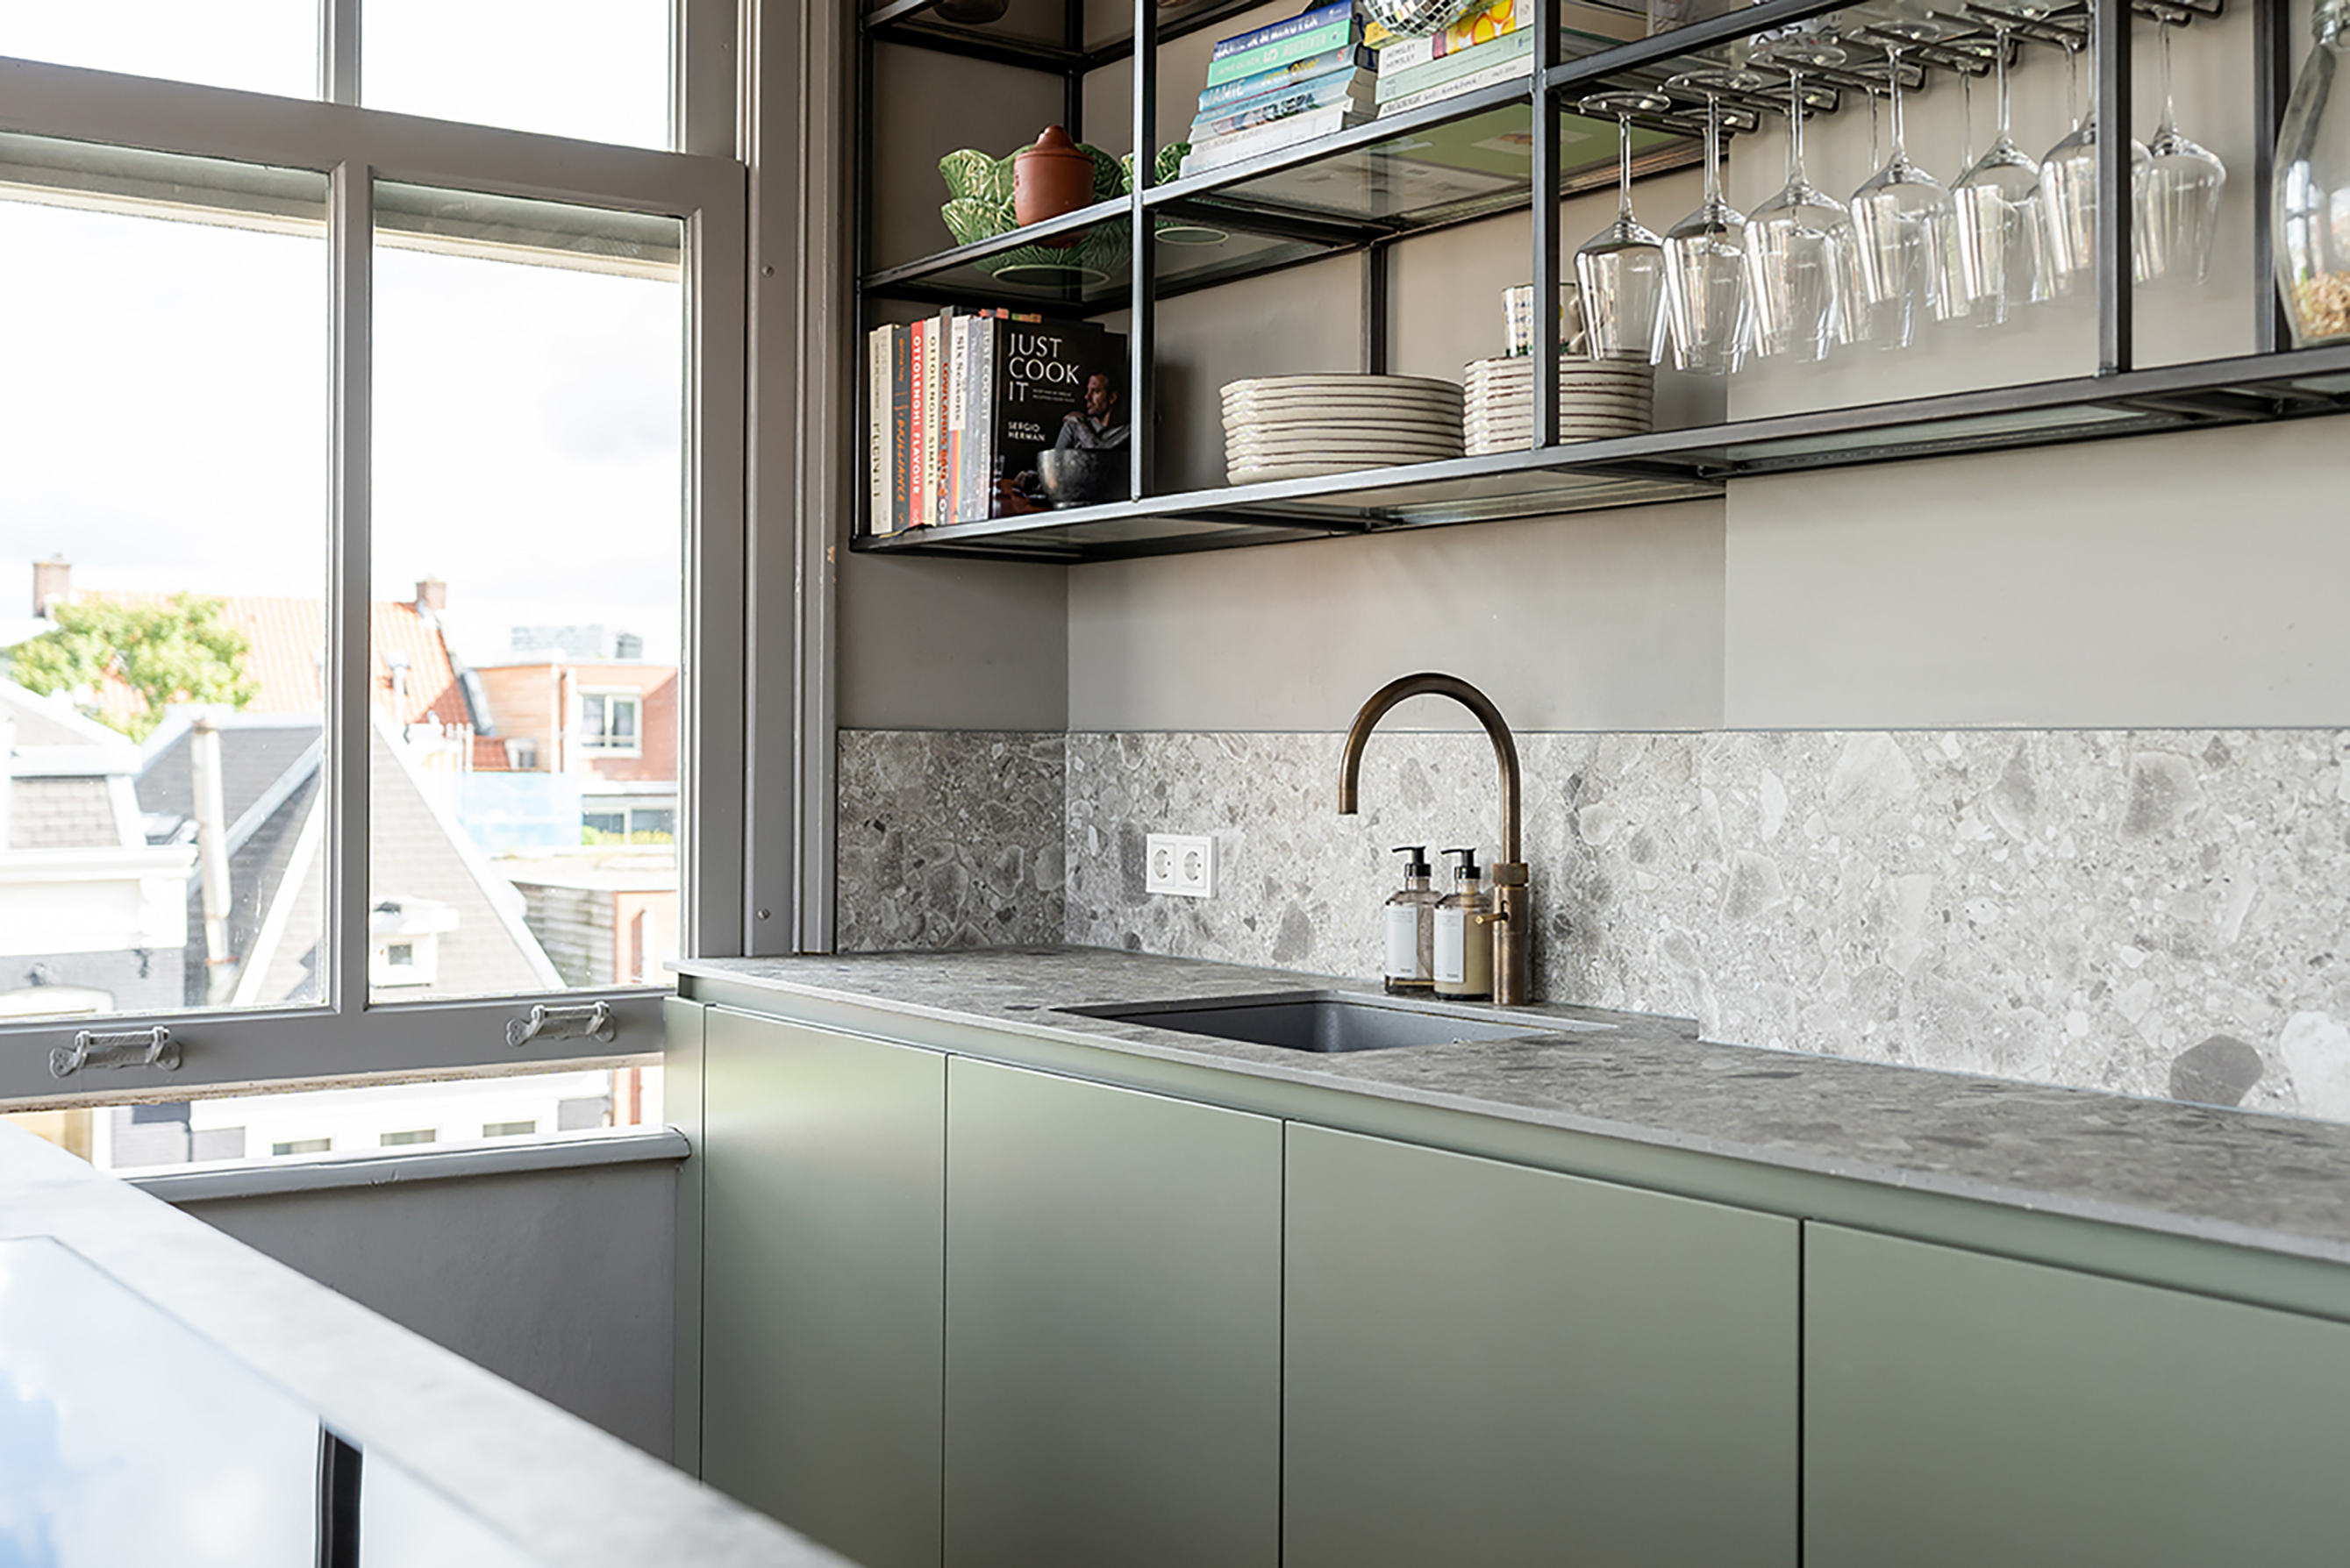 Foto : Keuken in olijfgroen, perfect passend bij bijzondere woning